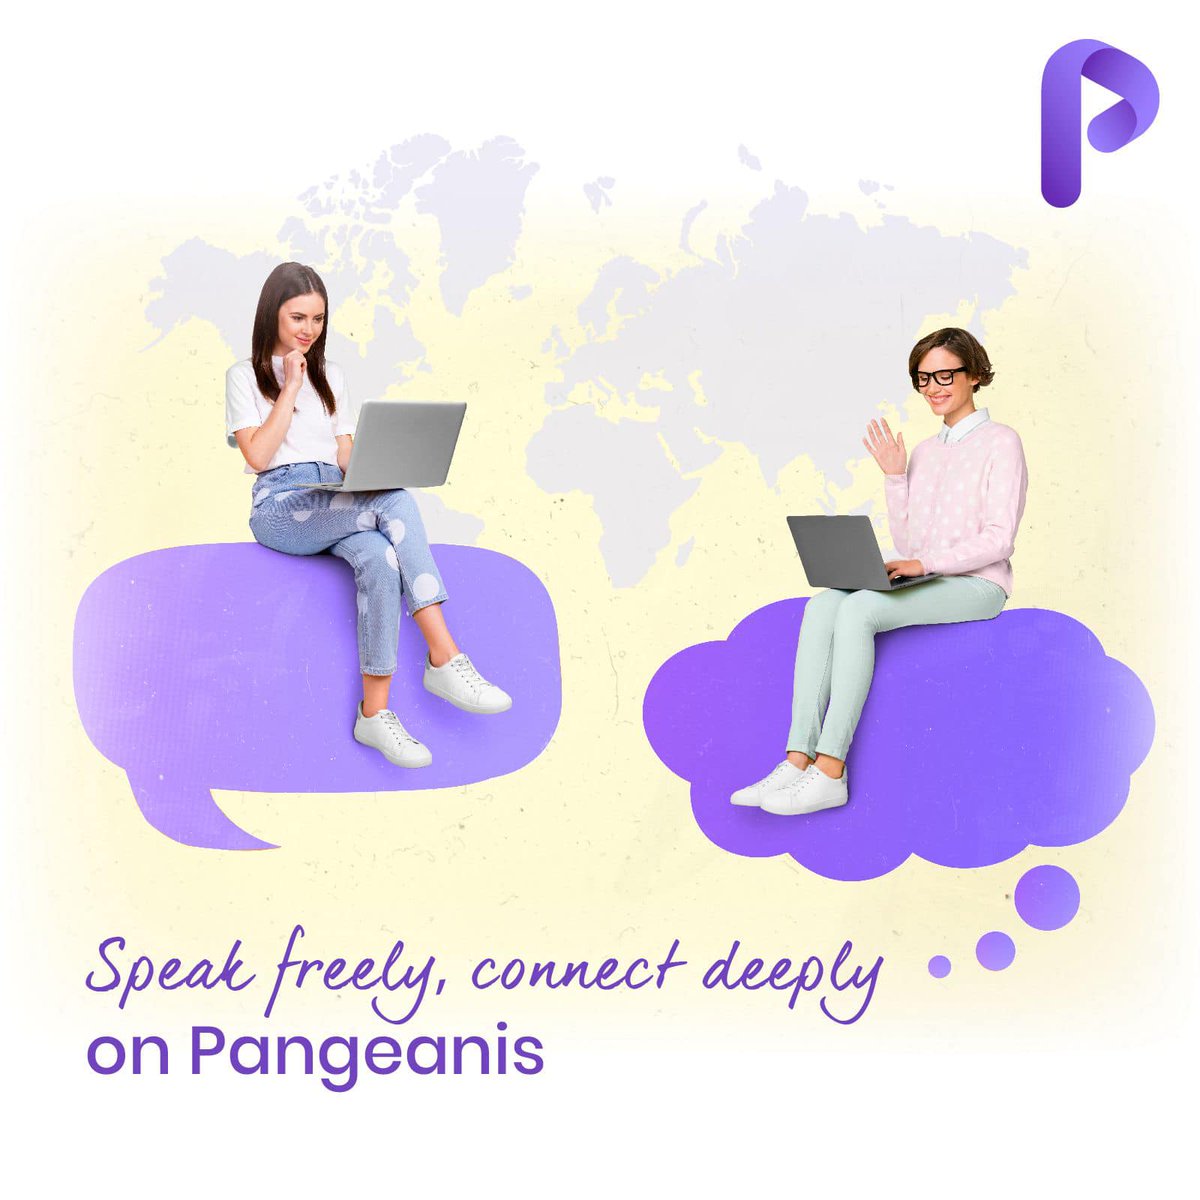 مع ميزة محادثات بنجيانيز، يمكنك تجربة الاتصال العميق والتواصل مع الأشخاص من مختلف أنحاء العالم بحرية. #socialmedia #app #social #digital #pangeanis #global #world #connectivity #chat #chatting #creativity #algorithms #artificialintelligence #bengalore #mangalore @malarab1